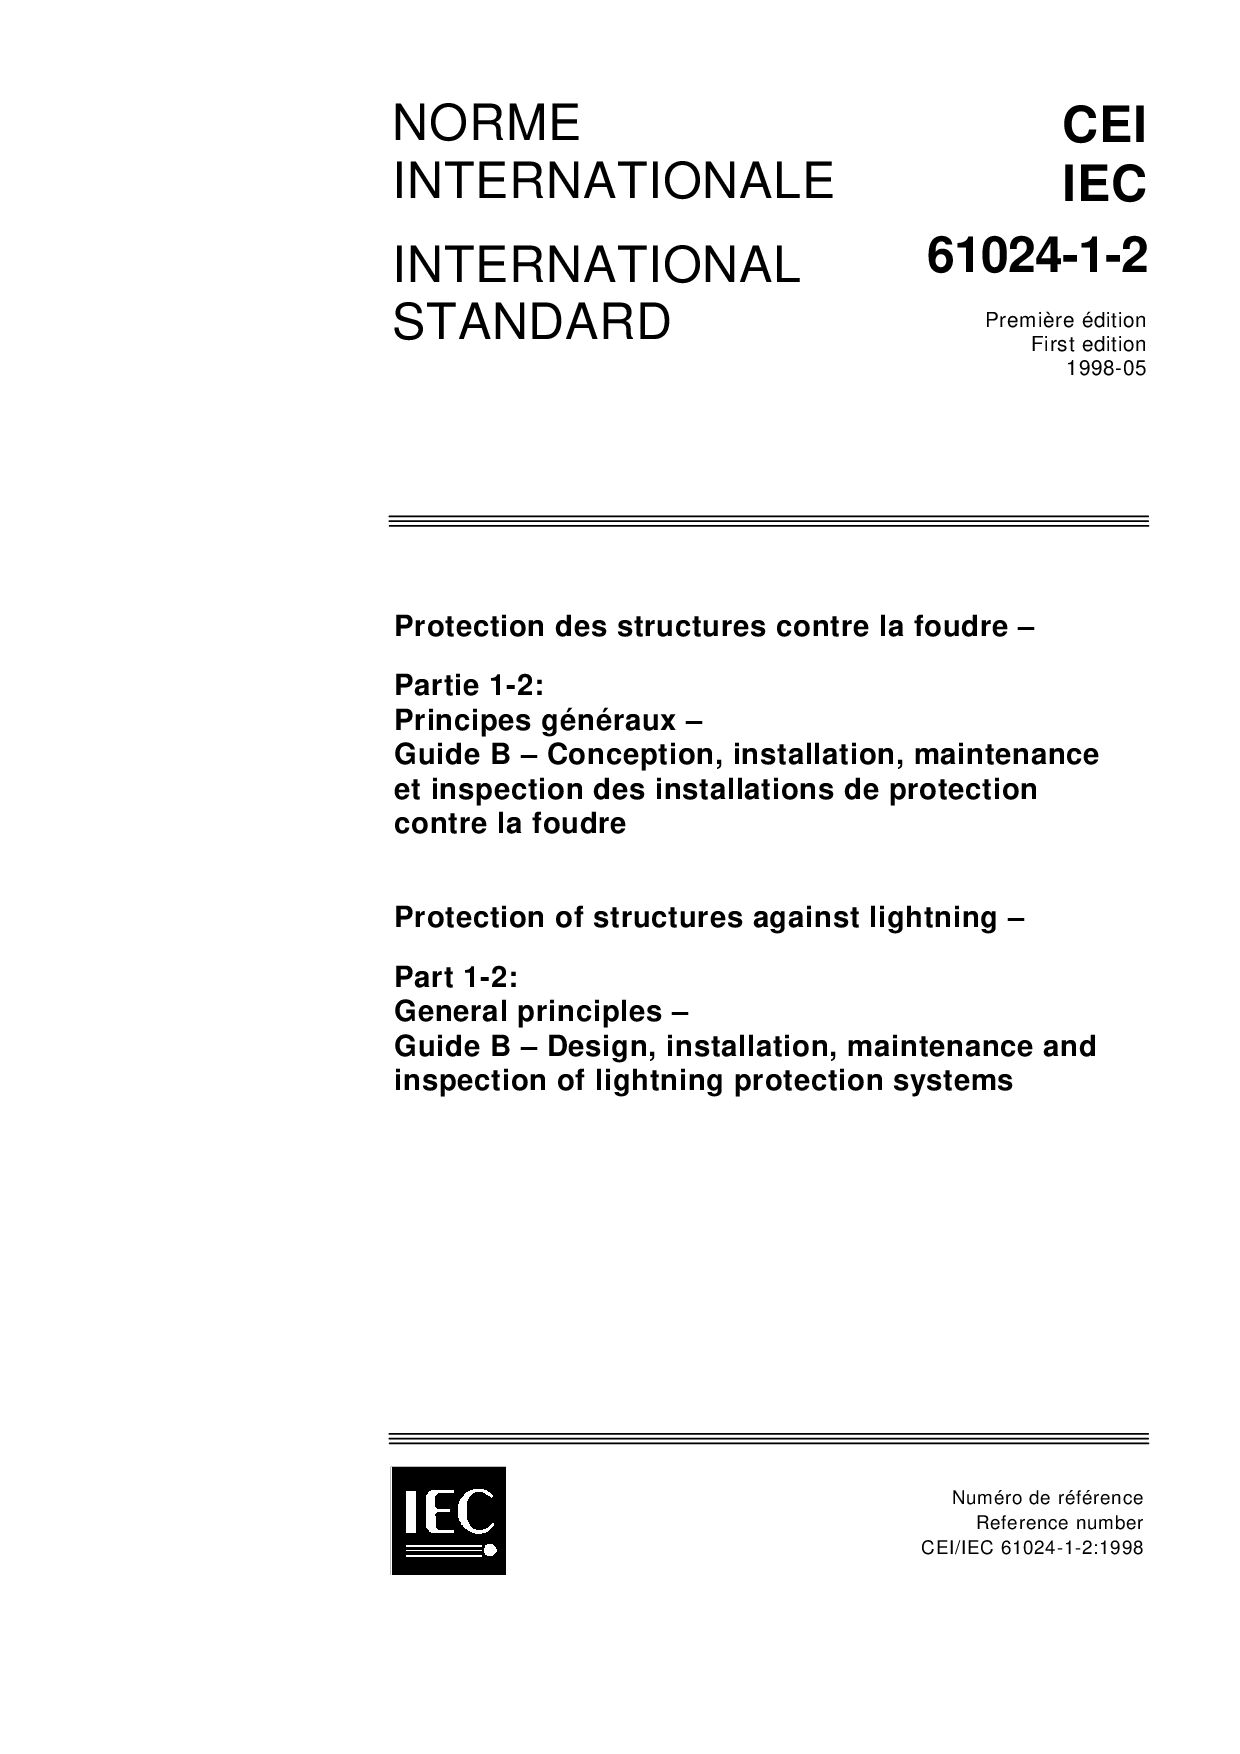 IEC 61024-1-2-1998